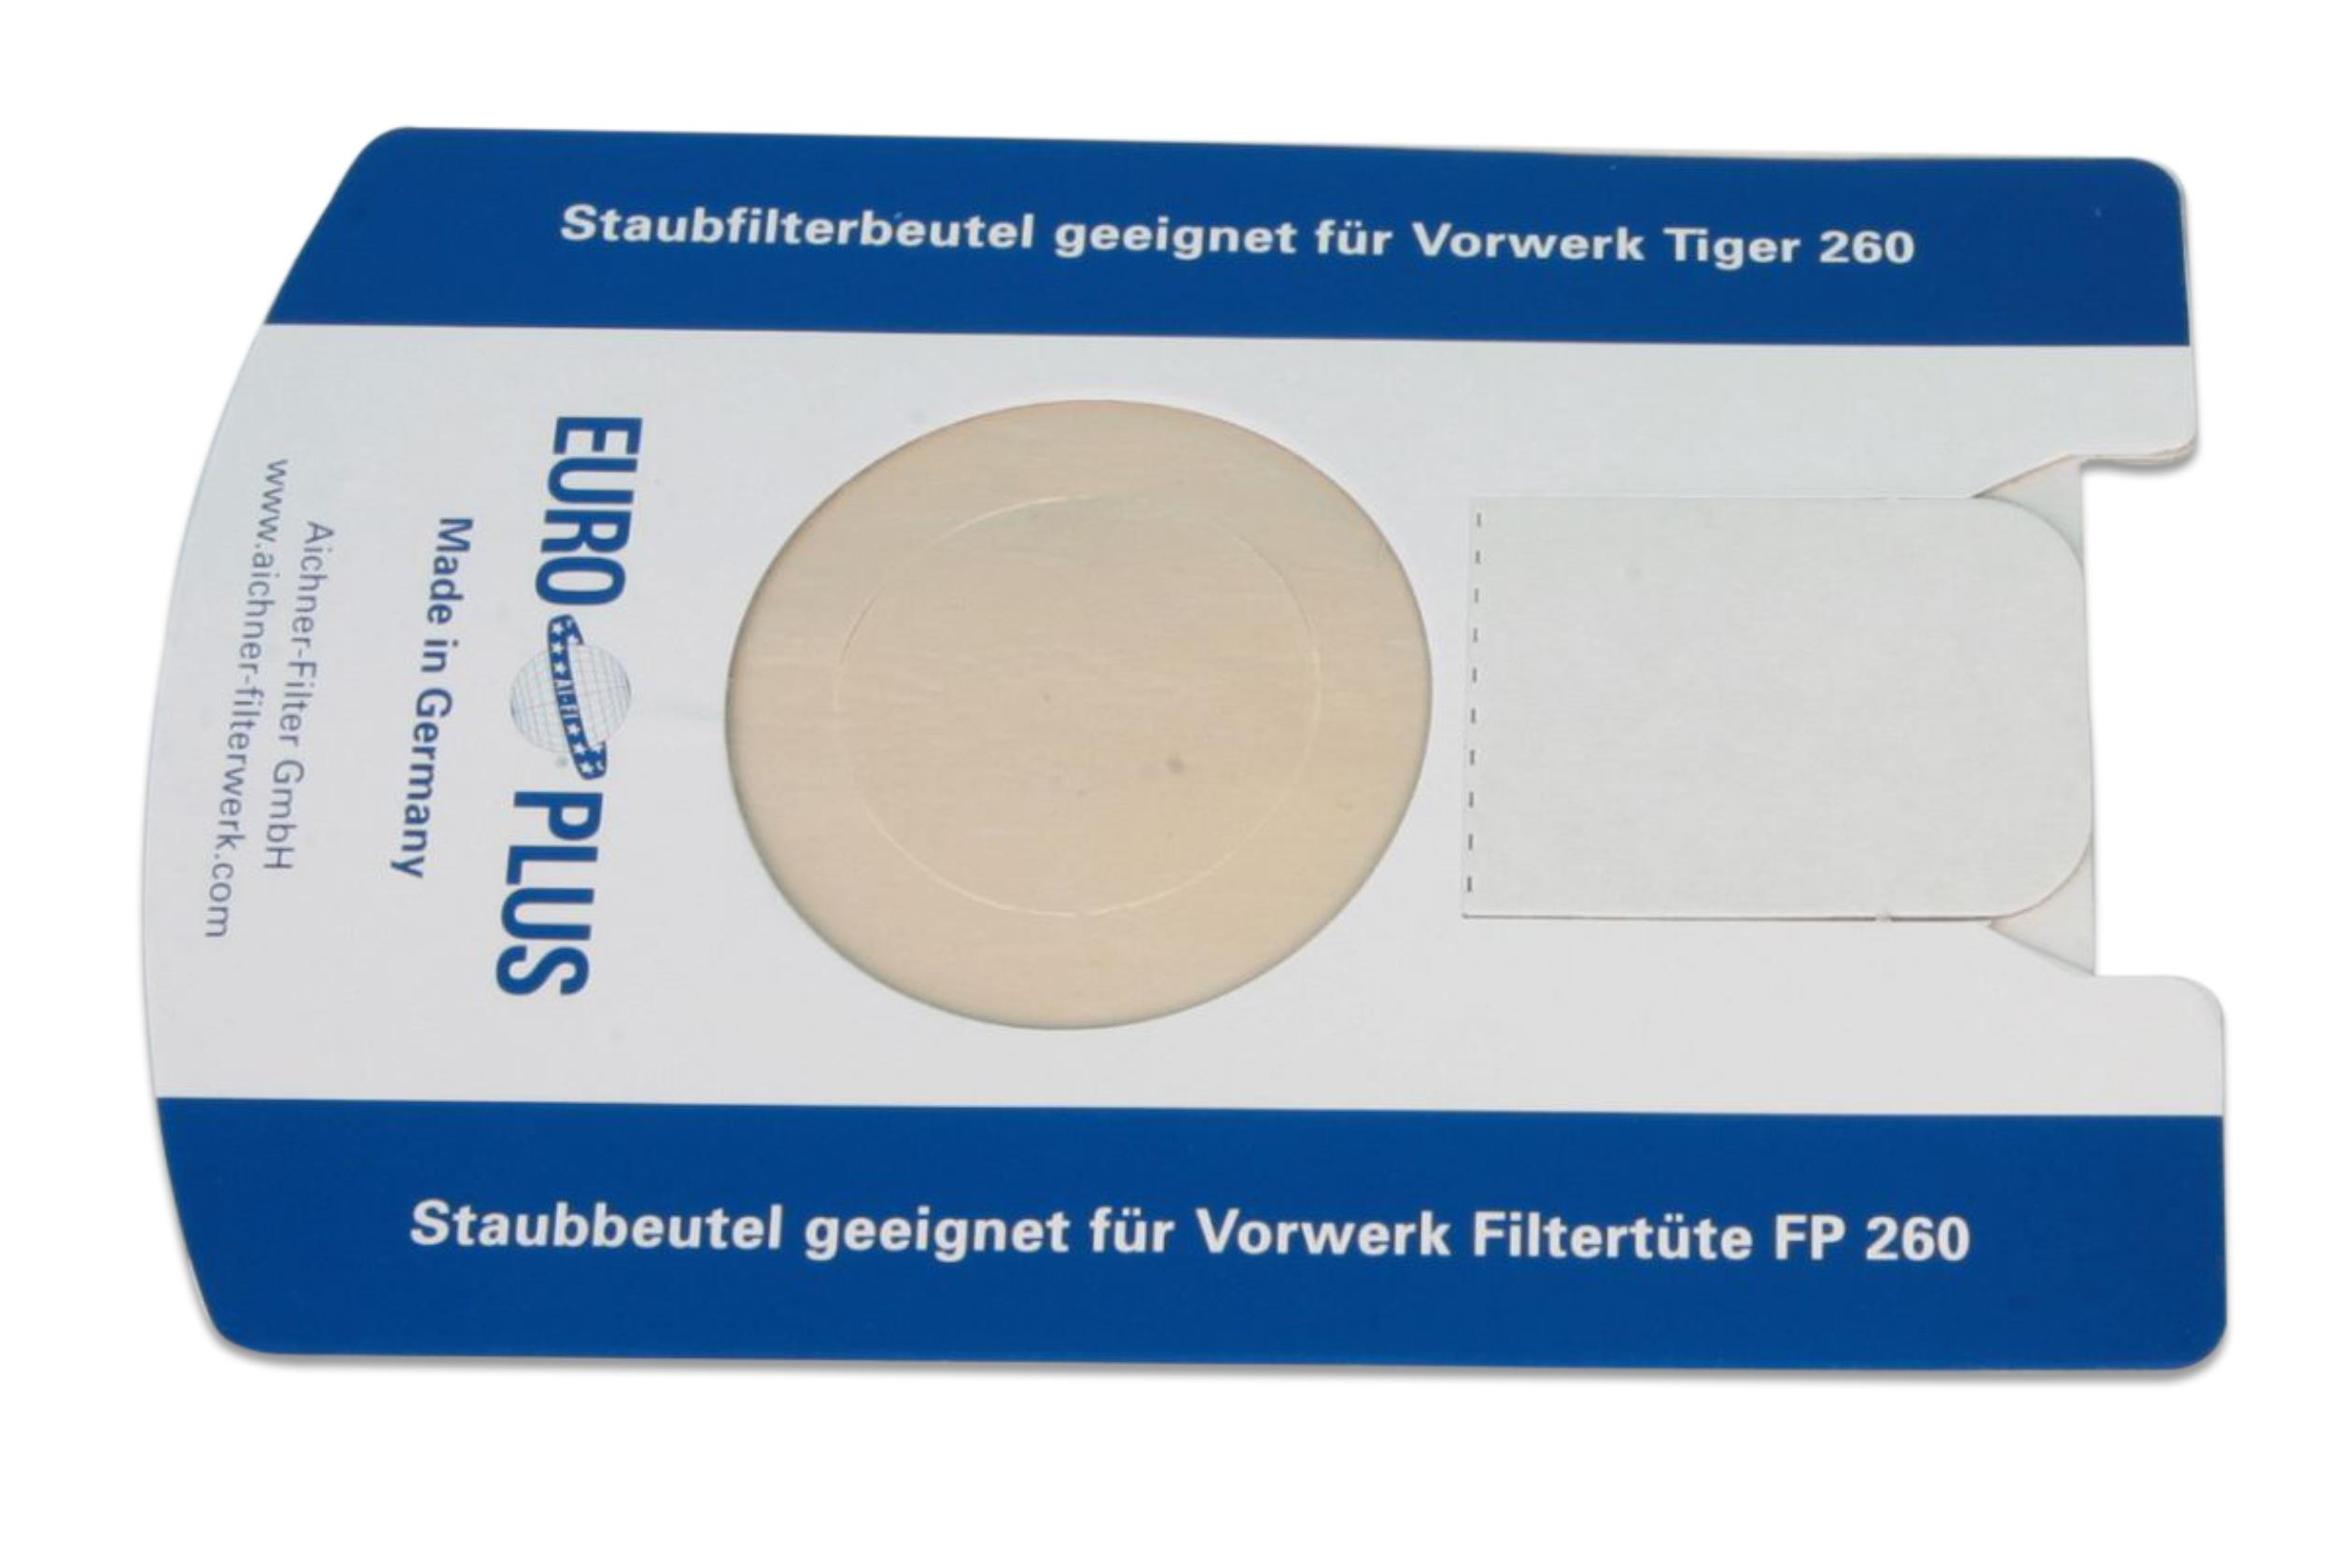 STAUBSAUGERLADEN.DE für 260 Hochwertige VT265, Kobold Staubsaugerbeutel Tiger VT300, VT270, 5 Staubbeutel